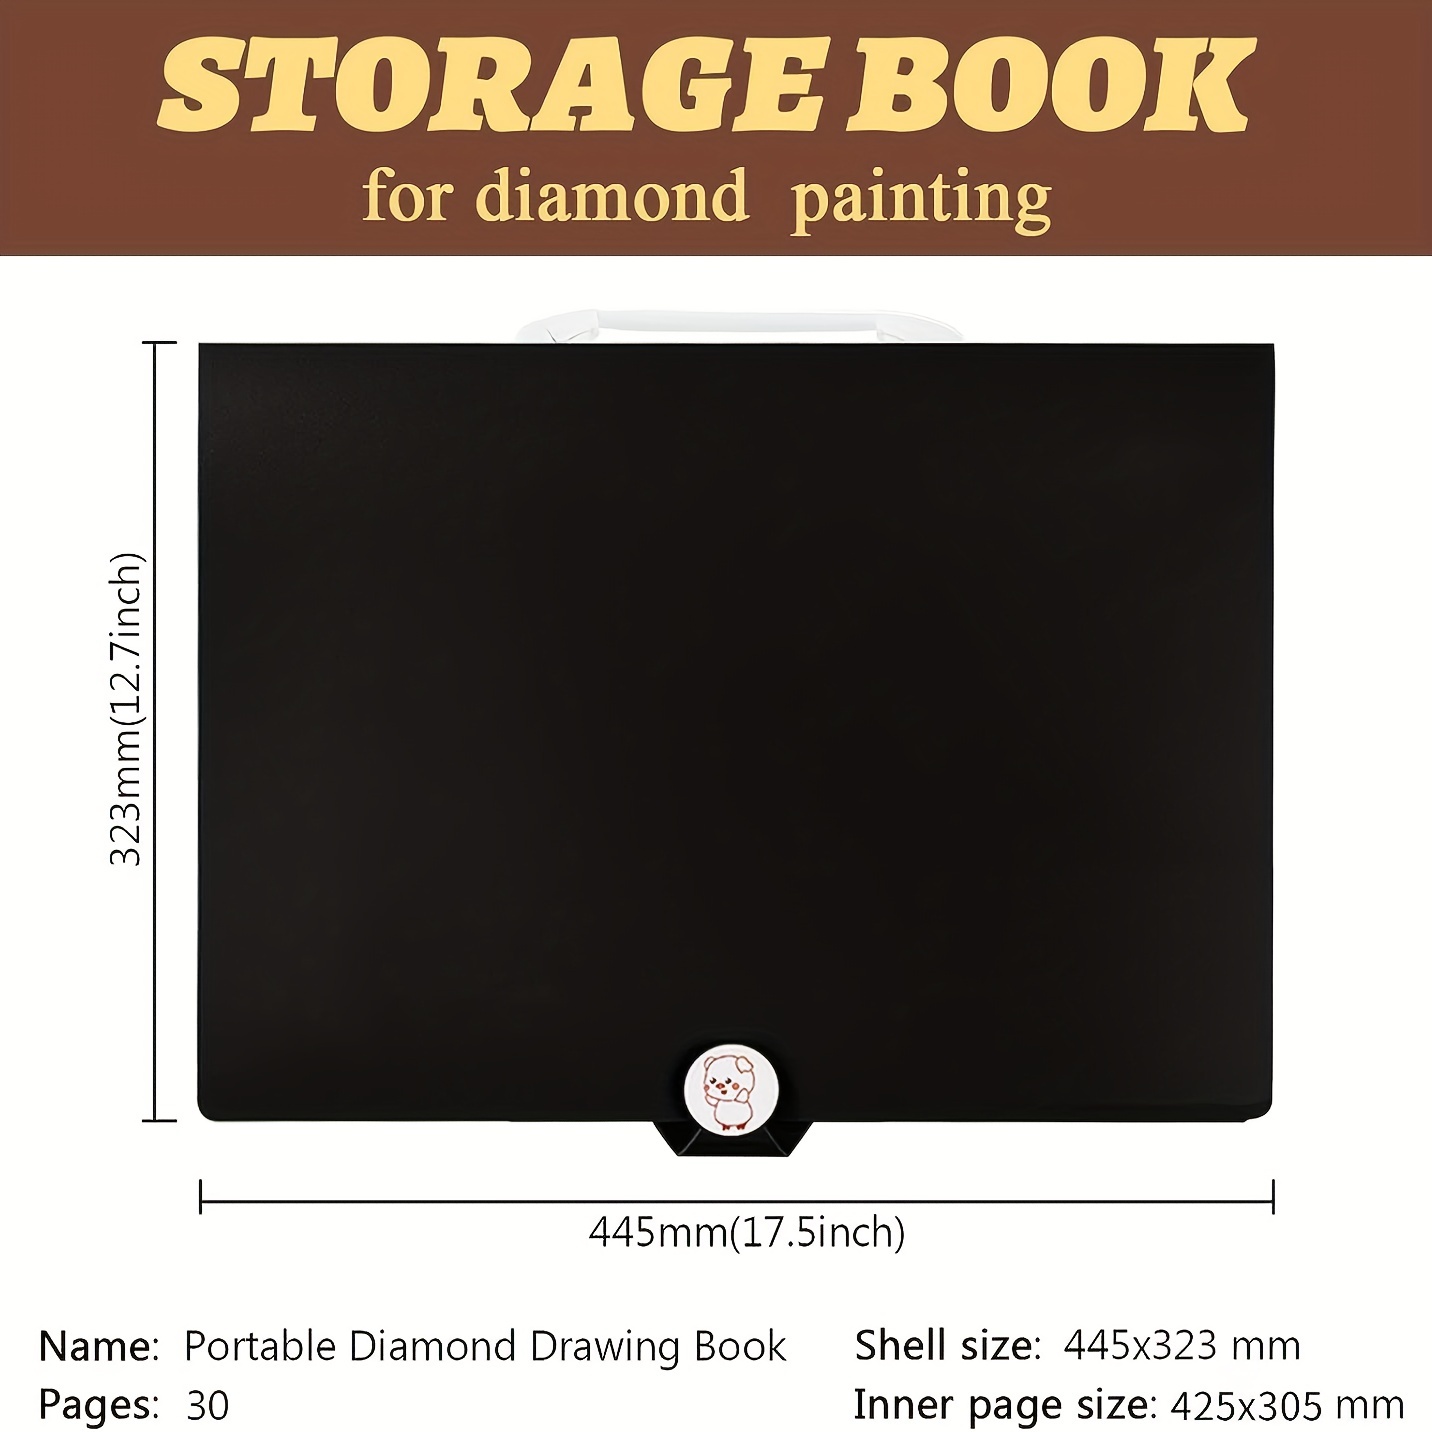  A2 30 Pages Diamond Painting Storage Book,Diamond